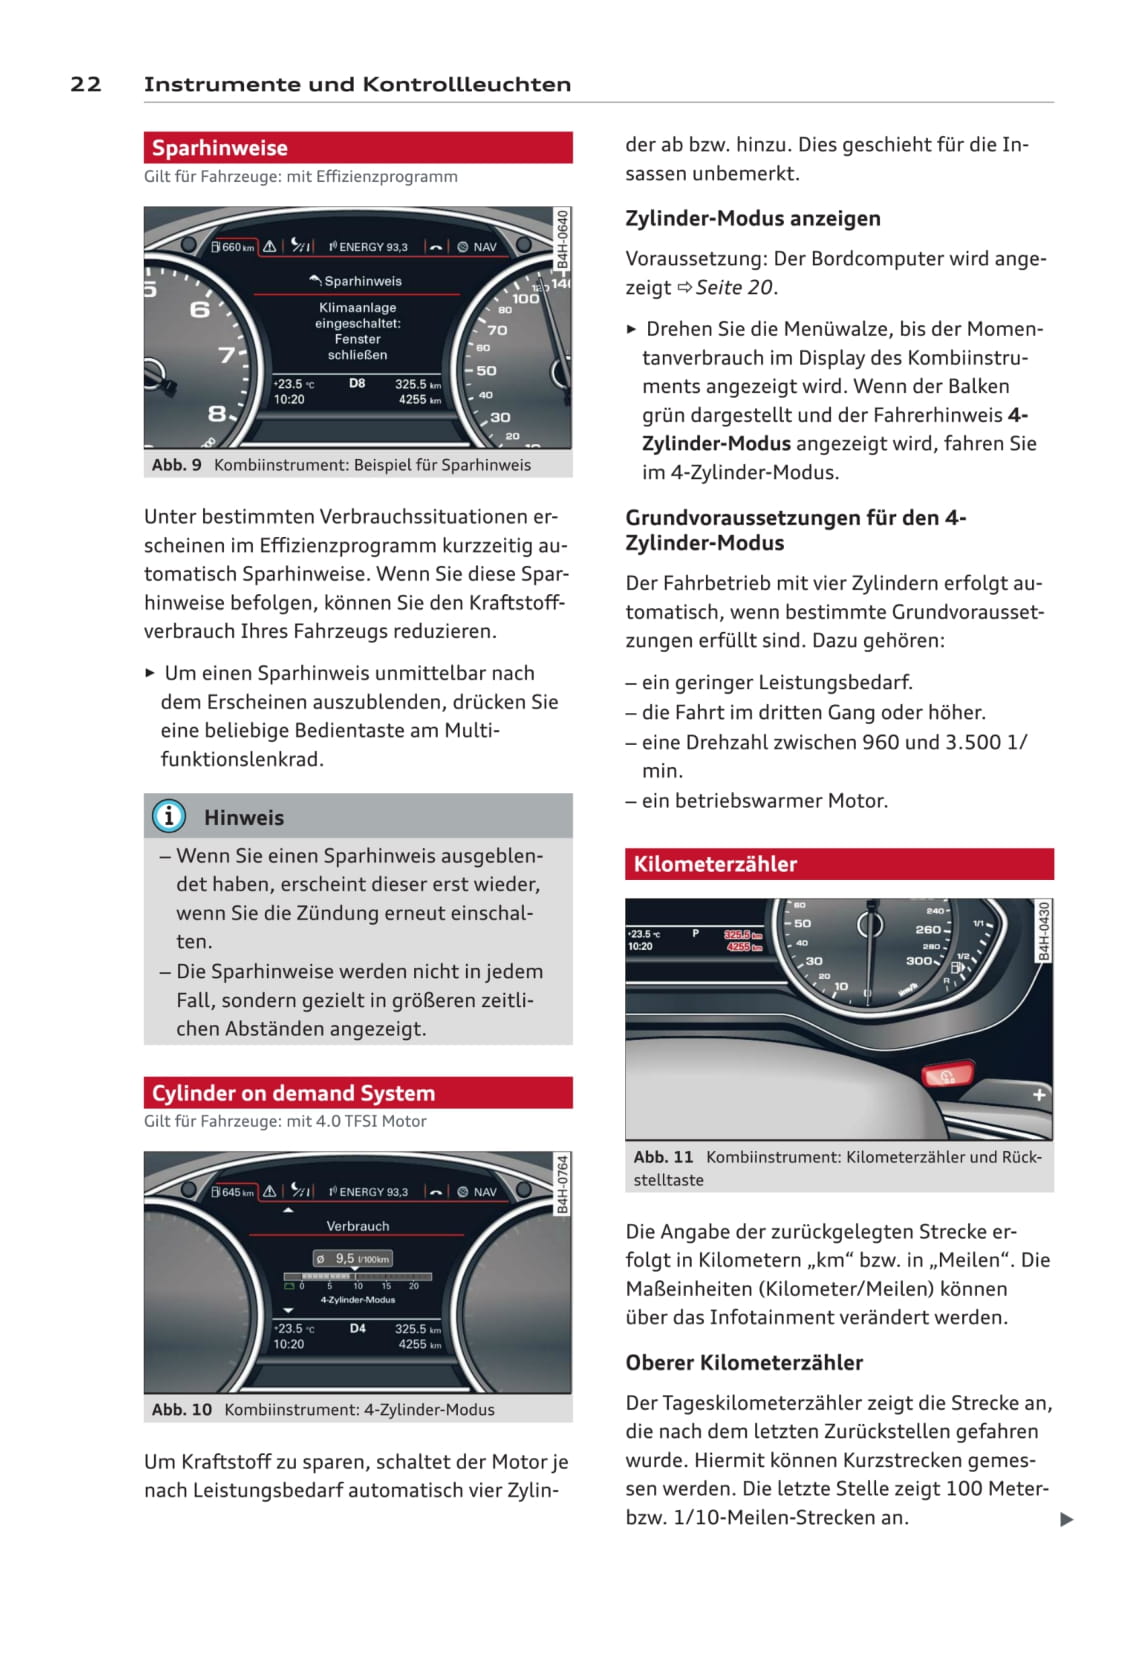 2010-2013 Audi A8/S8 Bedienungsanleitung | Deutsch